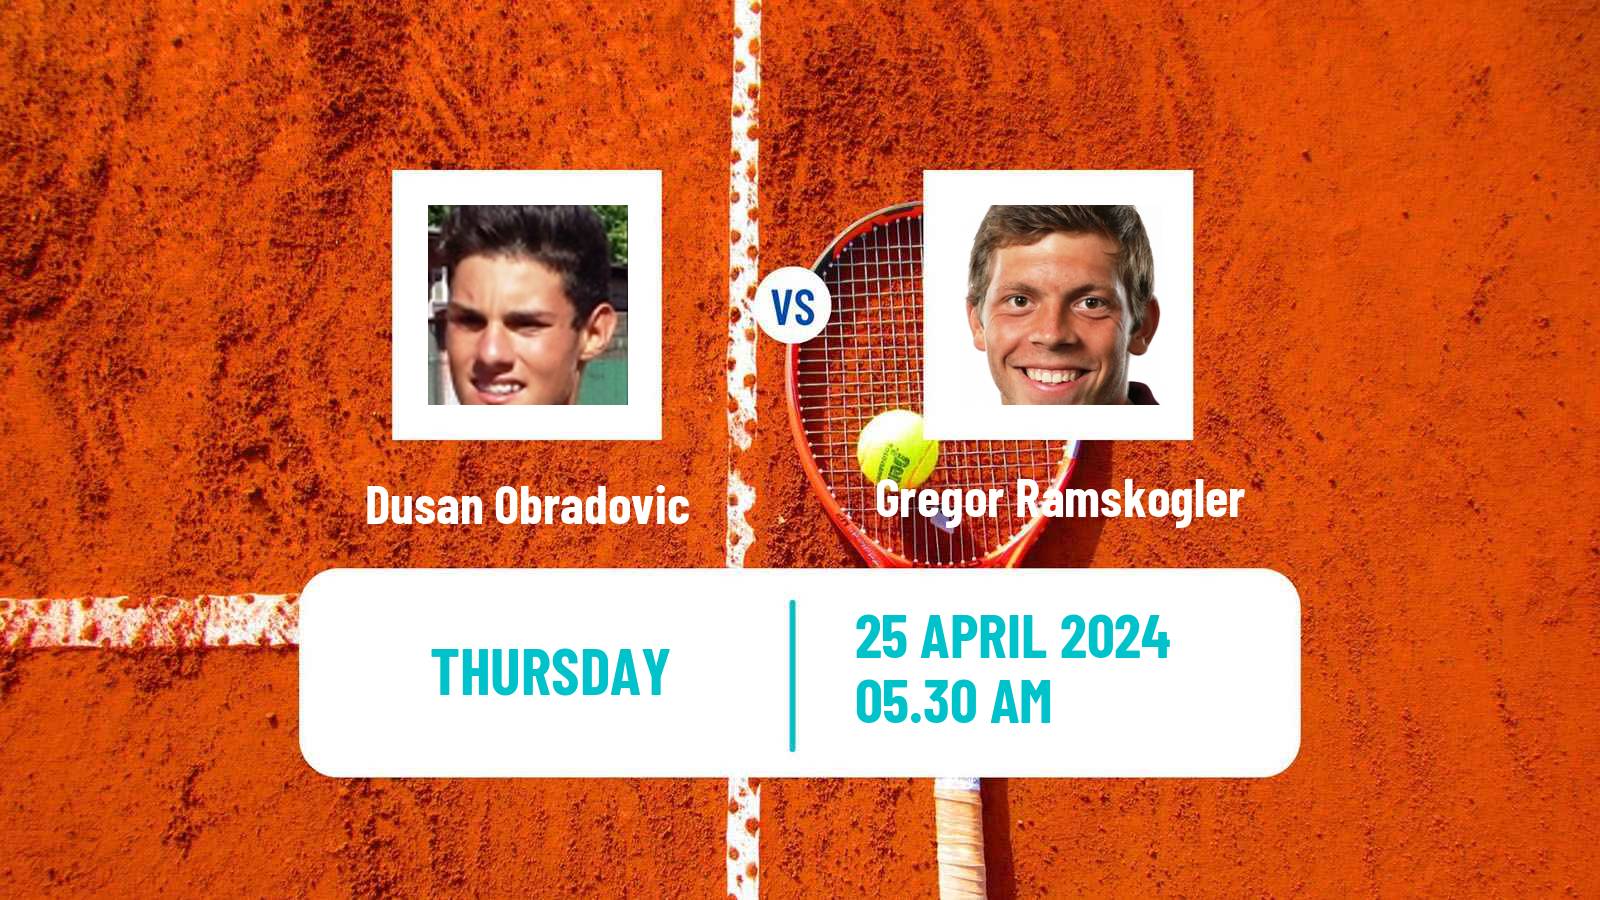 Tennis ITF M15 Meerbusch Men Dusan Obradovic - Gregor Ramskogler